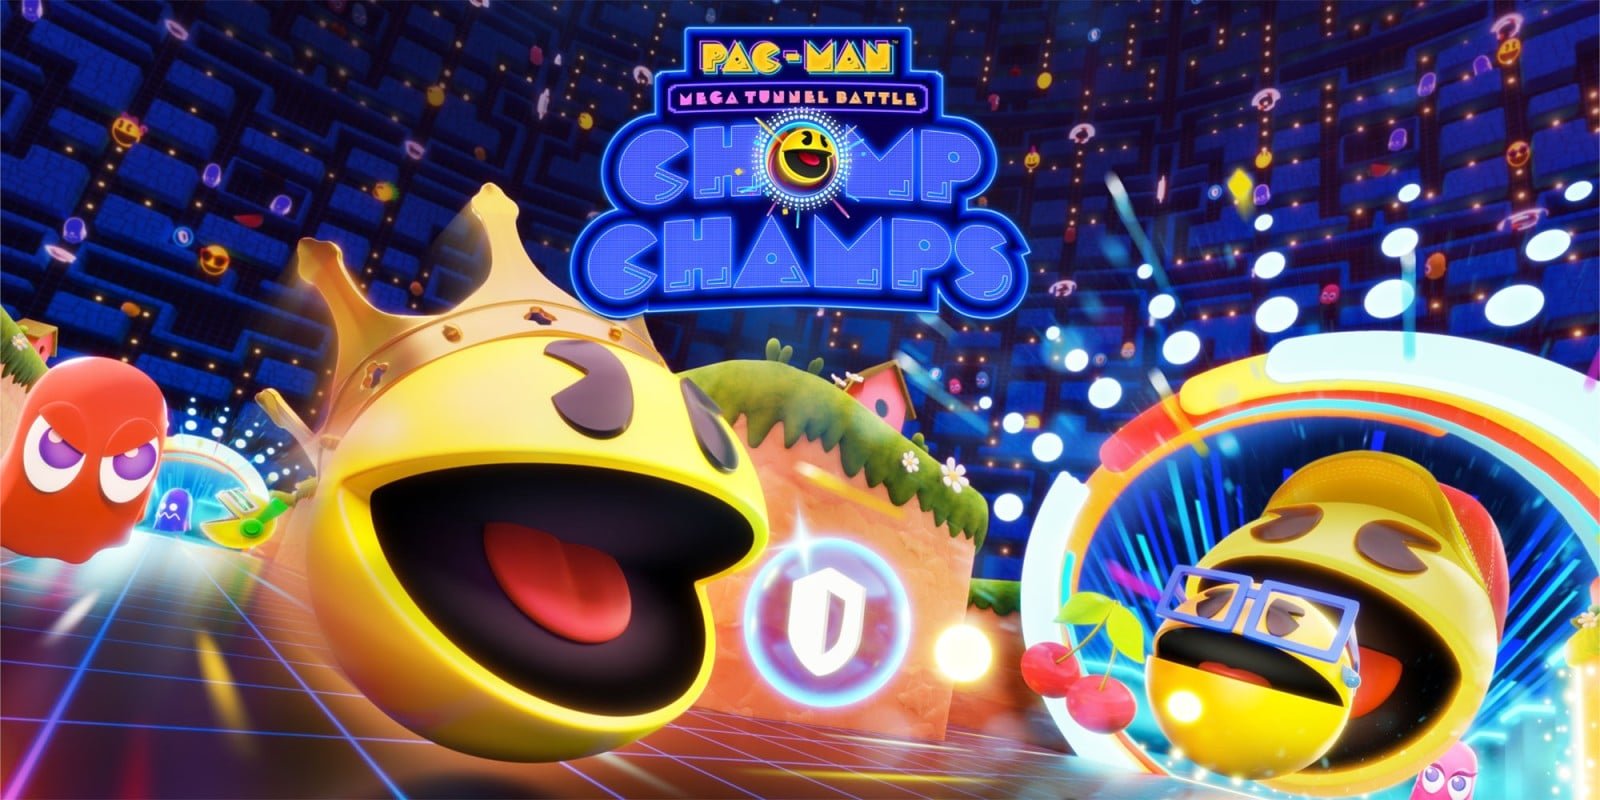 PAC-MAN Mega Tunnel Battle – Chomp Champs : le battle royale disponible aujourd’hui